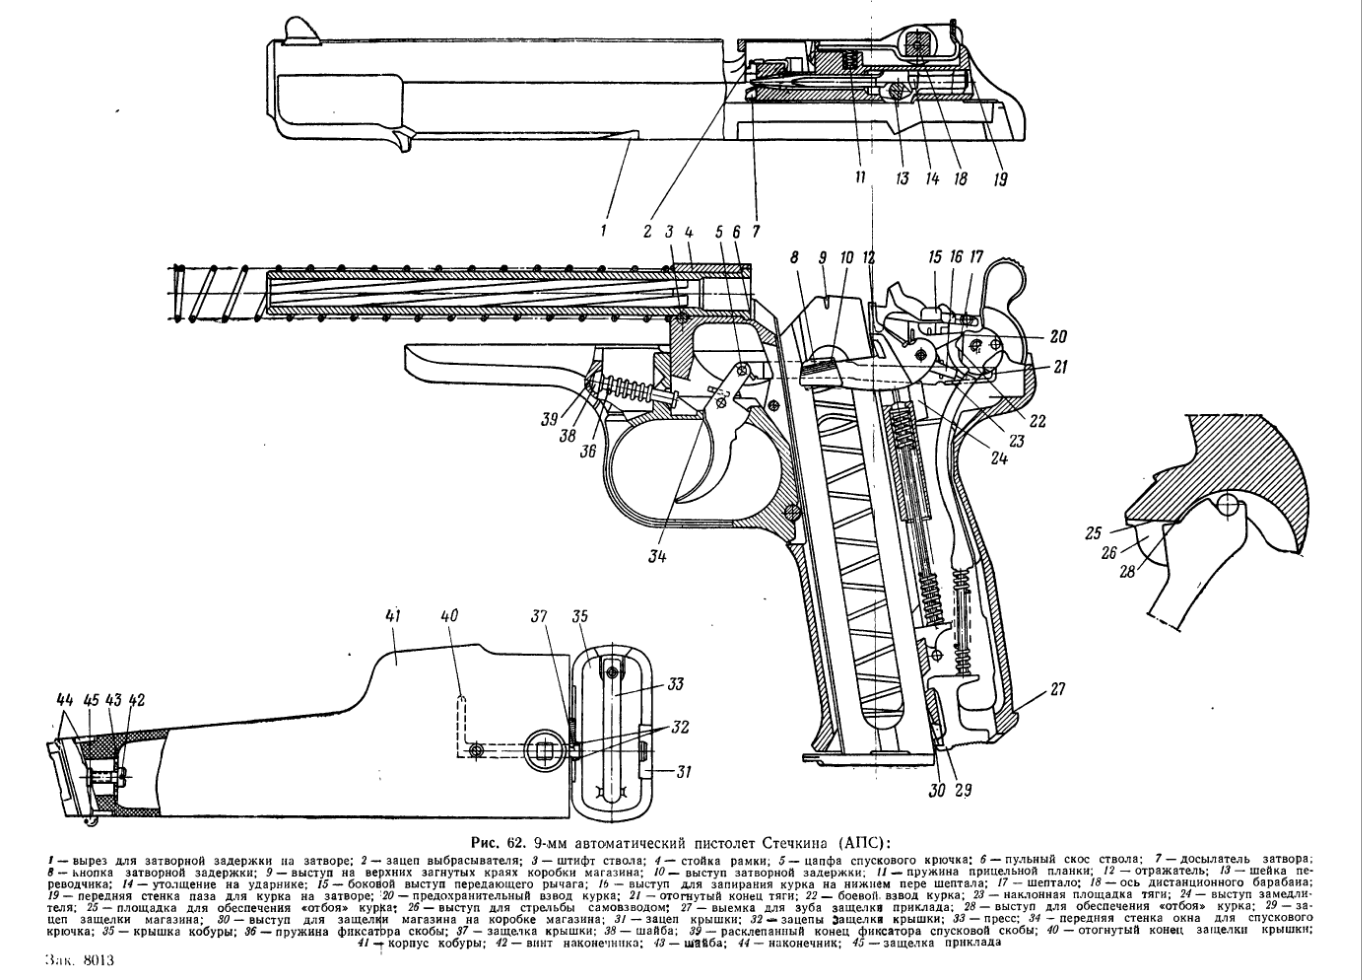 9-мм пистолет Стечкина АПС. Руководство по ремонту. 1958